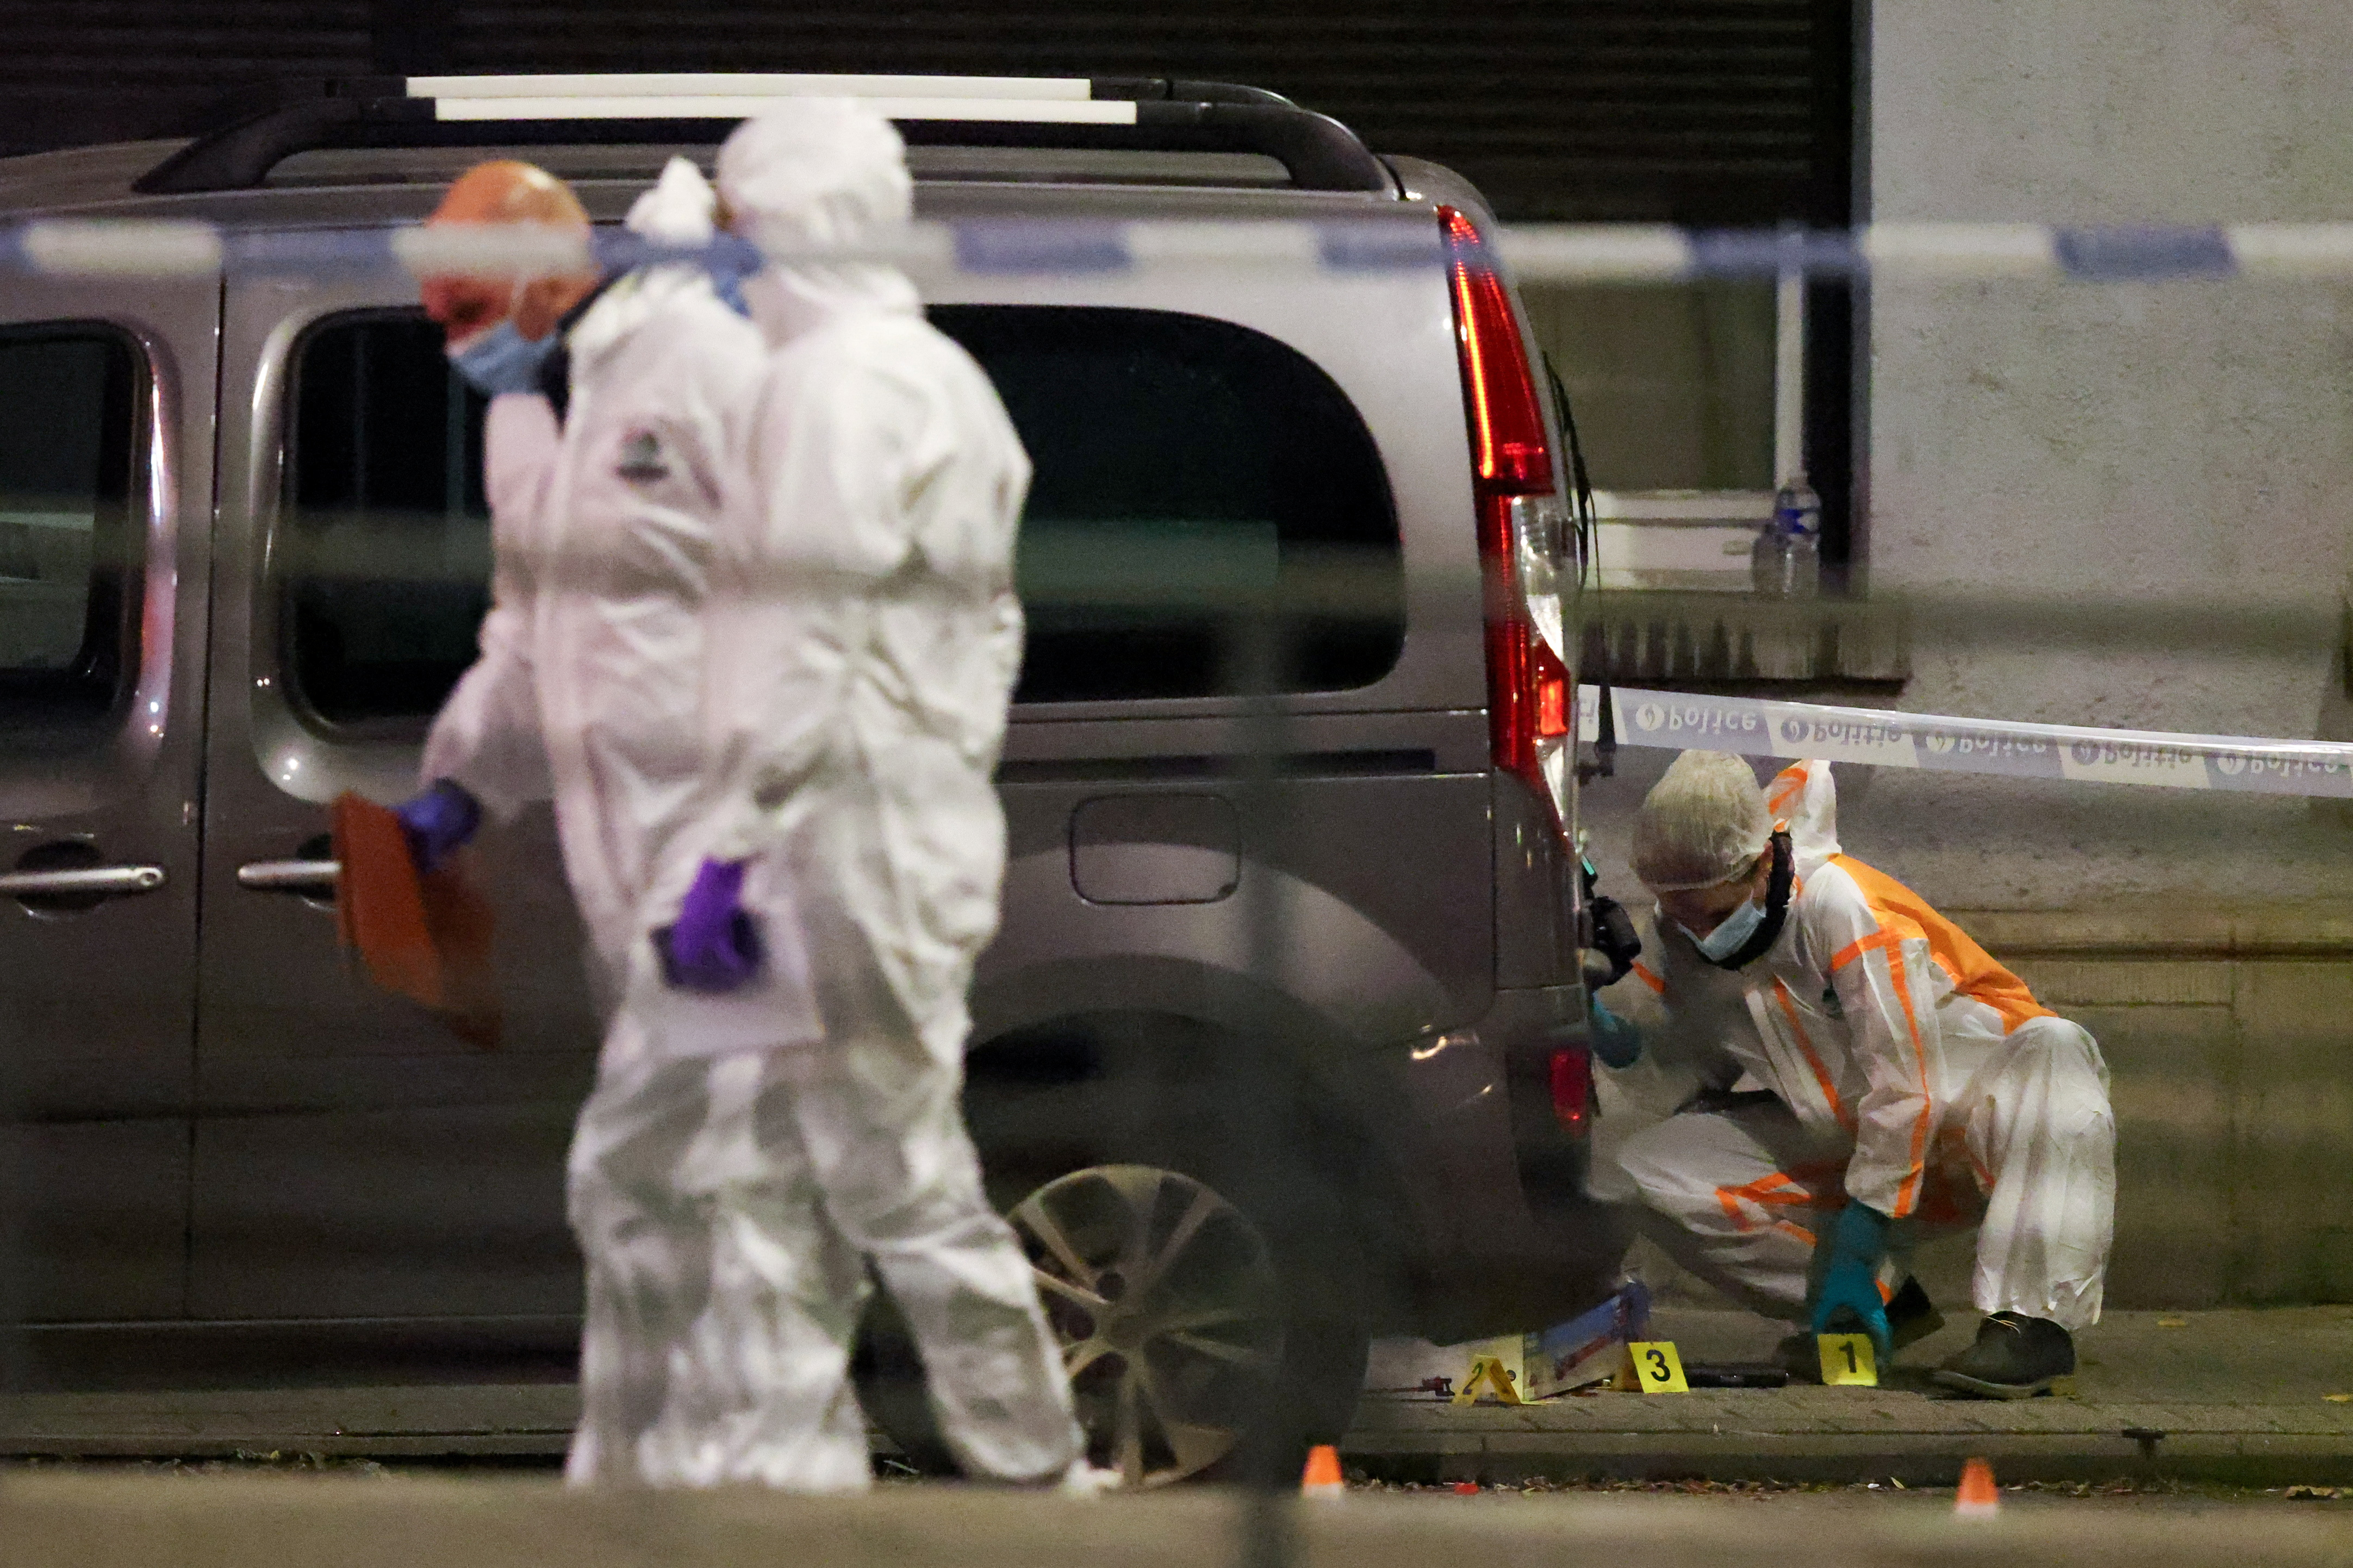 ブリュッセルで銃撃、スウェーデン人2人死亡 テロ警戒最高に - ロイター (Reuters Japan)